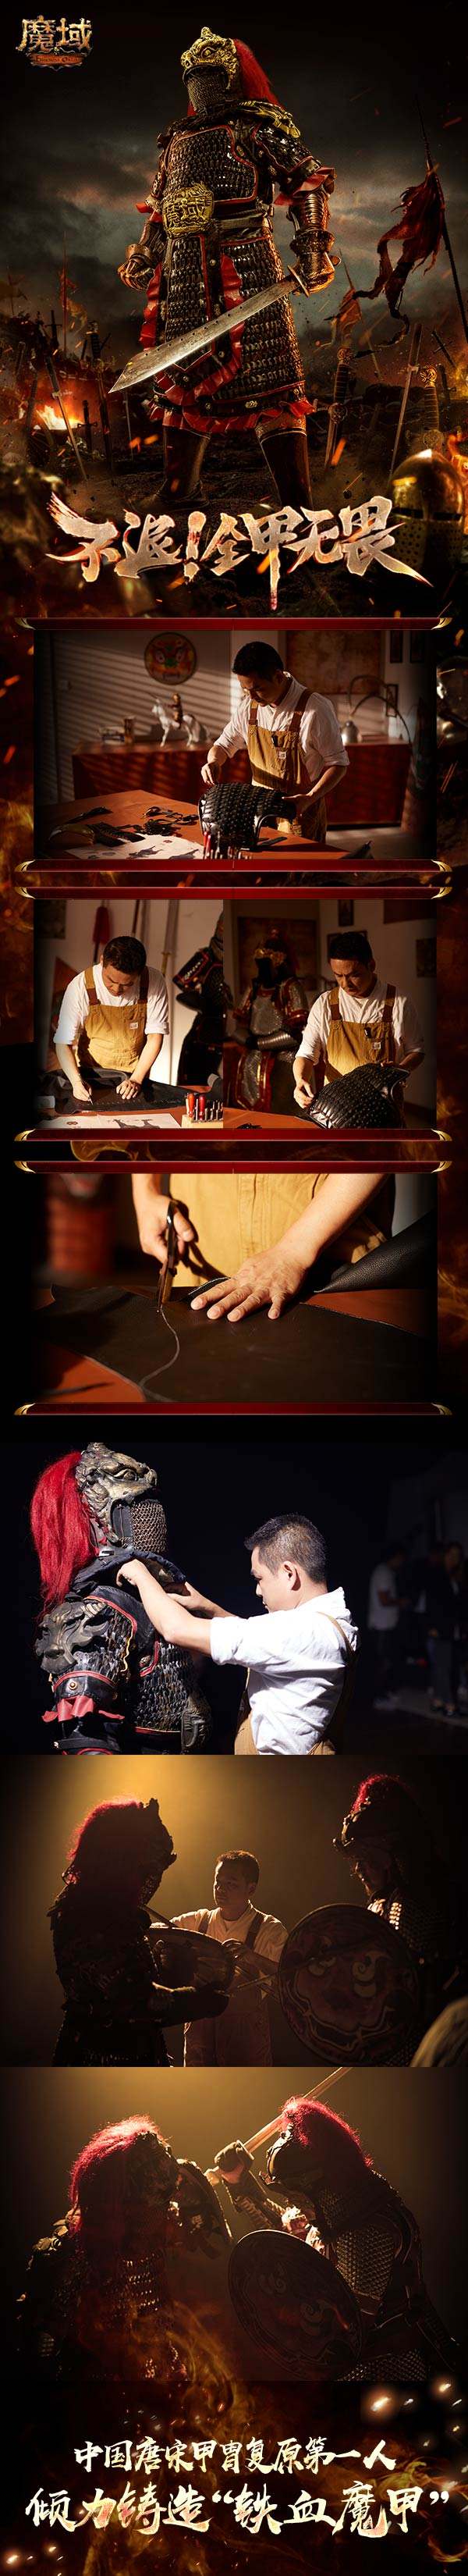 中国唐宋甲胄复原第一人倾力铸造 《魔域》“铁血魔甲”首次曝光！